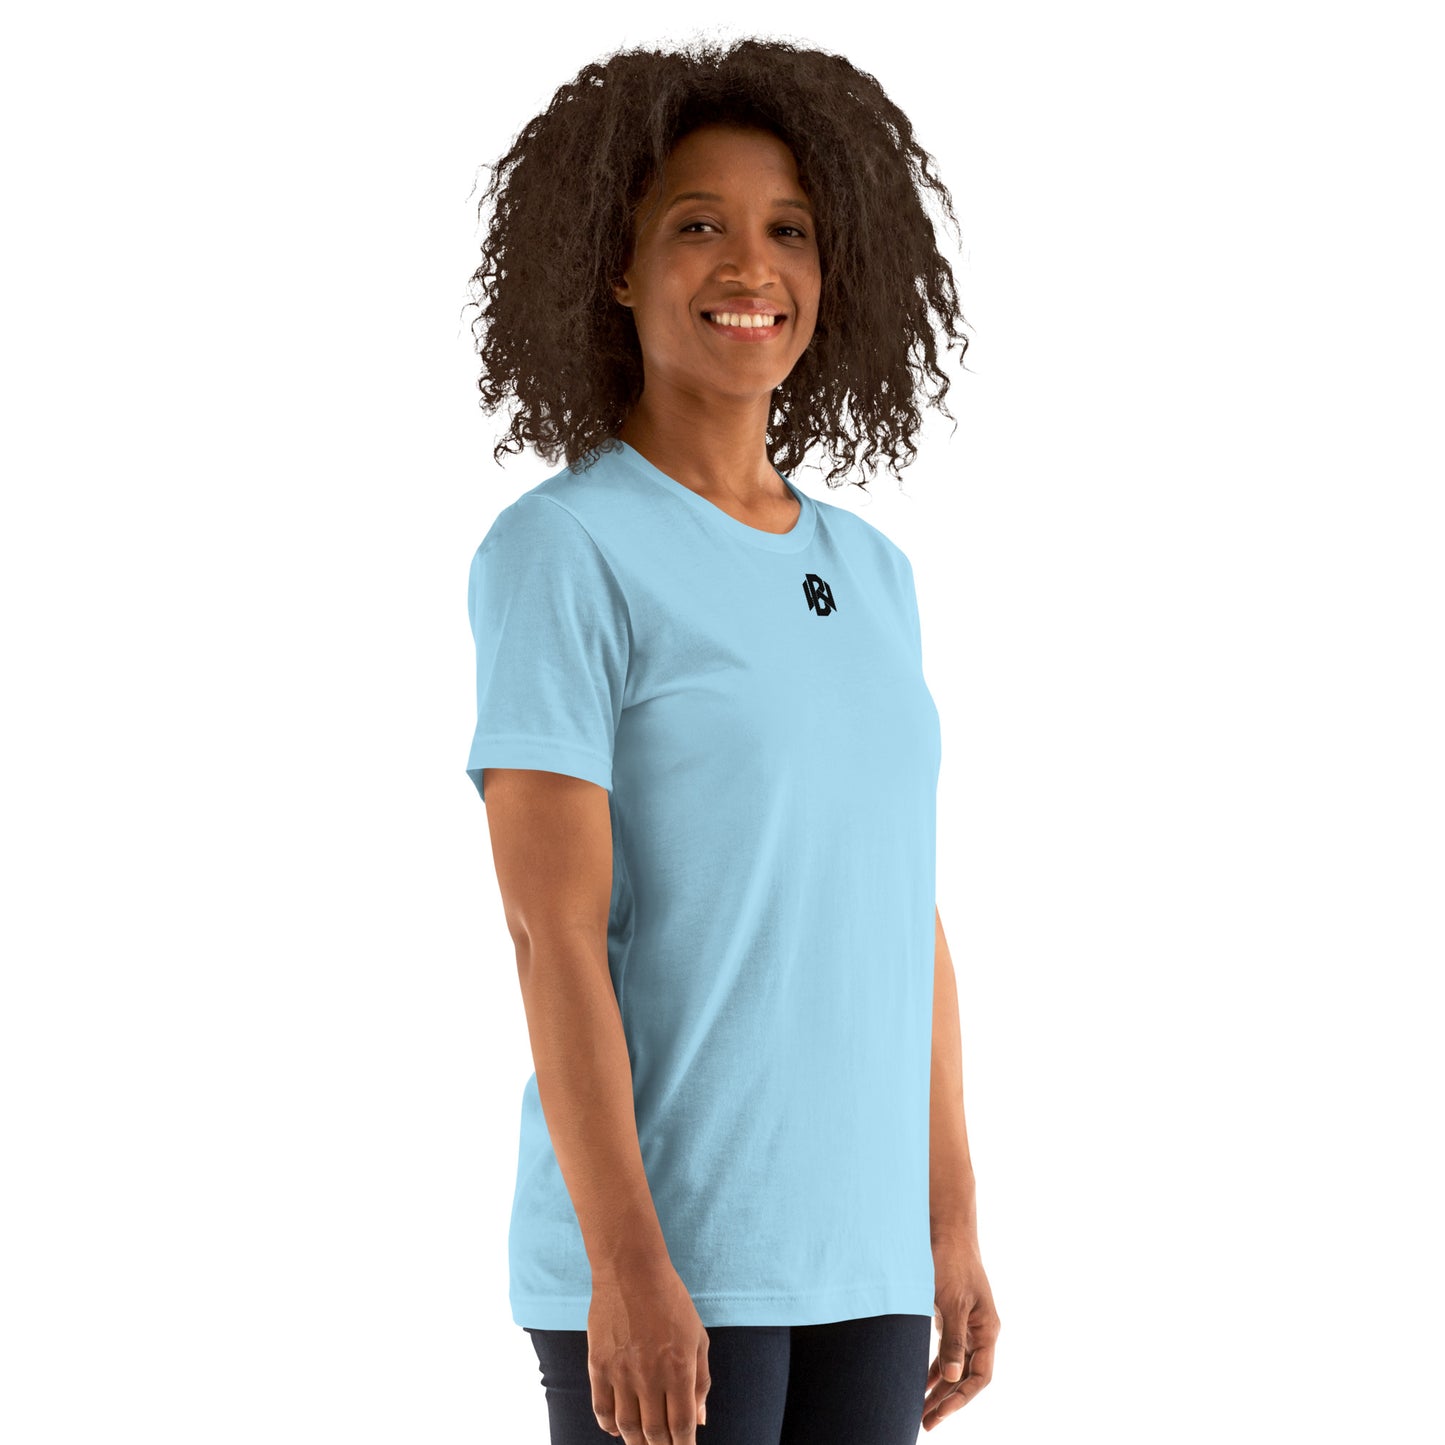 Adult BiohazardWife 'Alkaline' Staple T-shirt